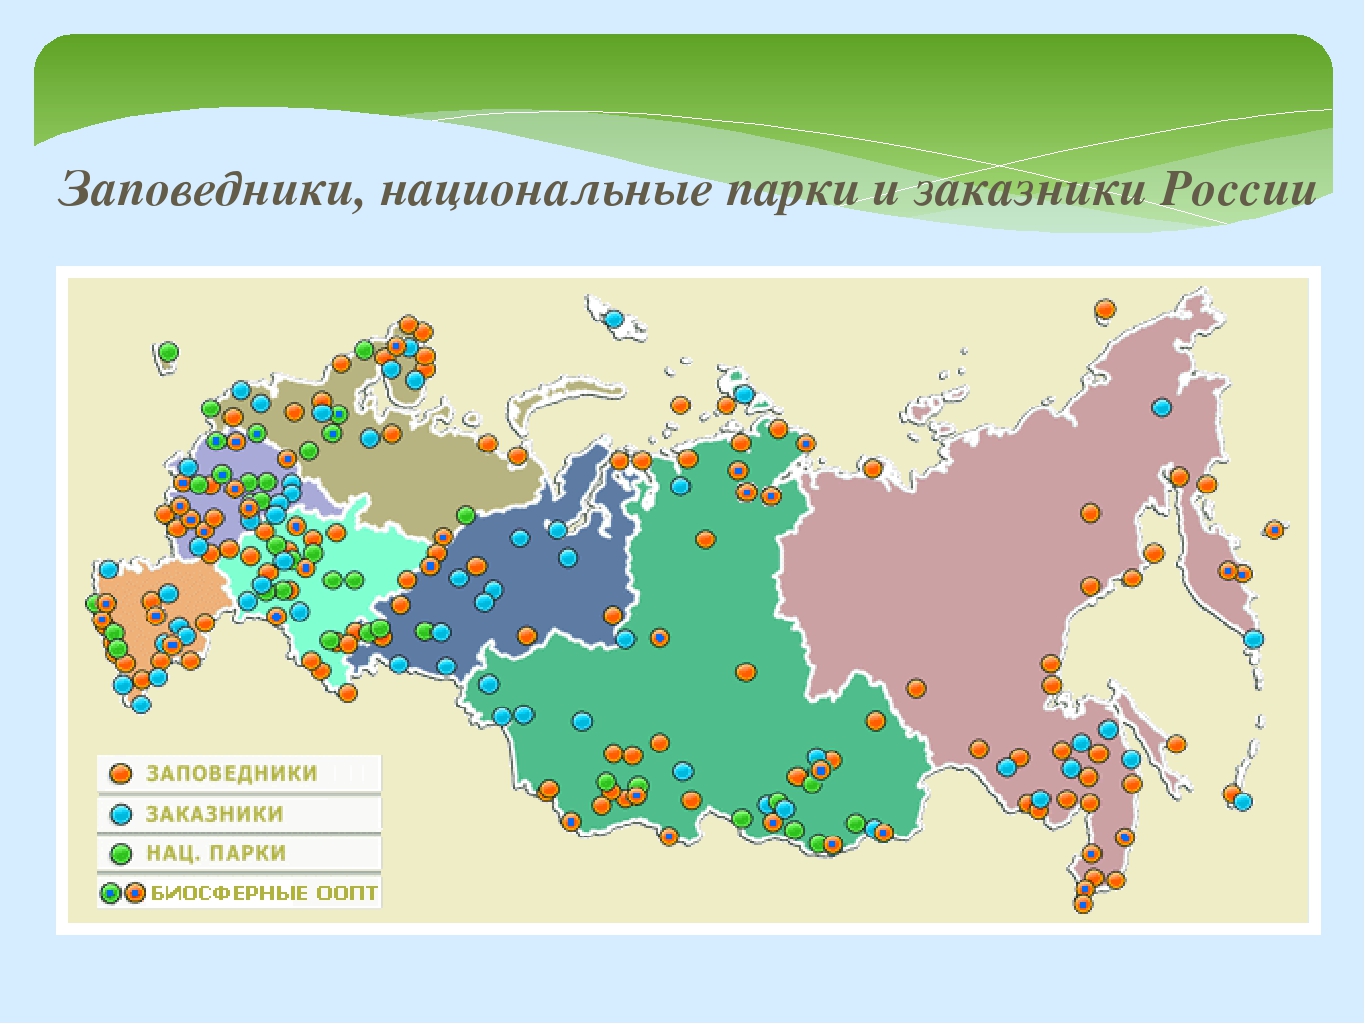 География 8 класс особо охраняемые территории россии